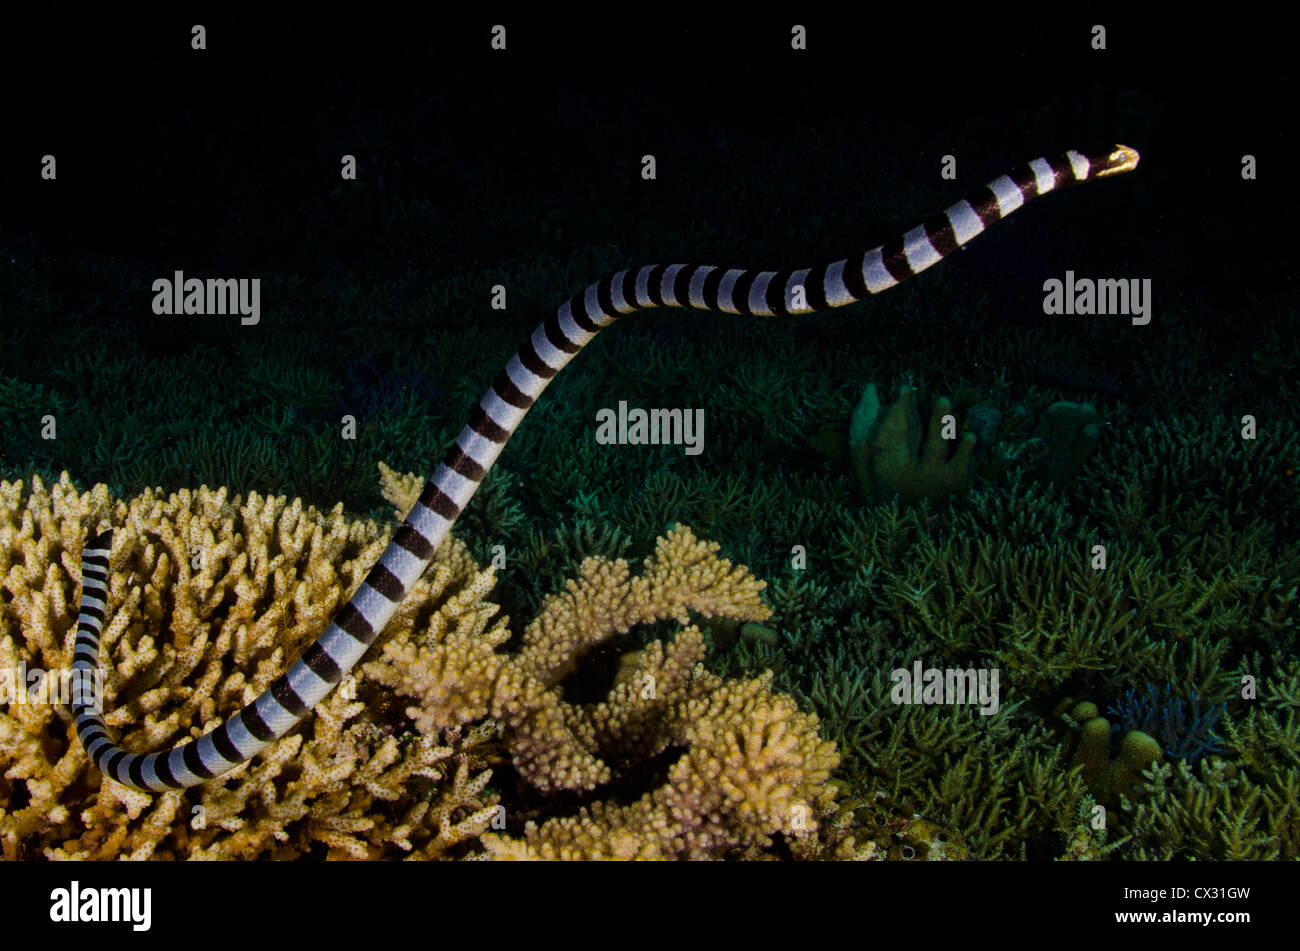 Seeschlange in Komodo, Indonesien, Unterwasser Meerestiere, gefährlich, vergiften, Bewegung, Jagd bei Nacht, Nacht-Tauchgang, dunkel. Stockfoto